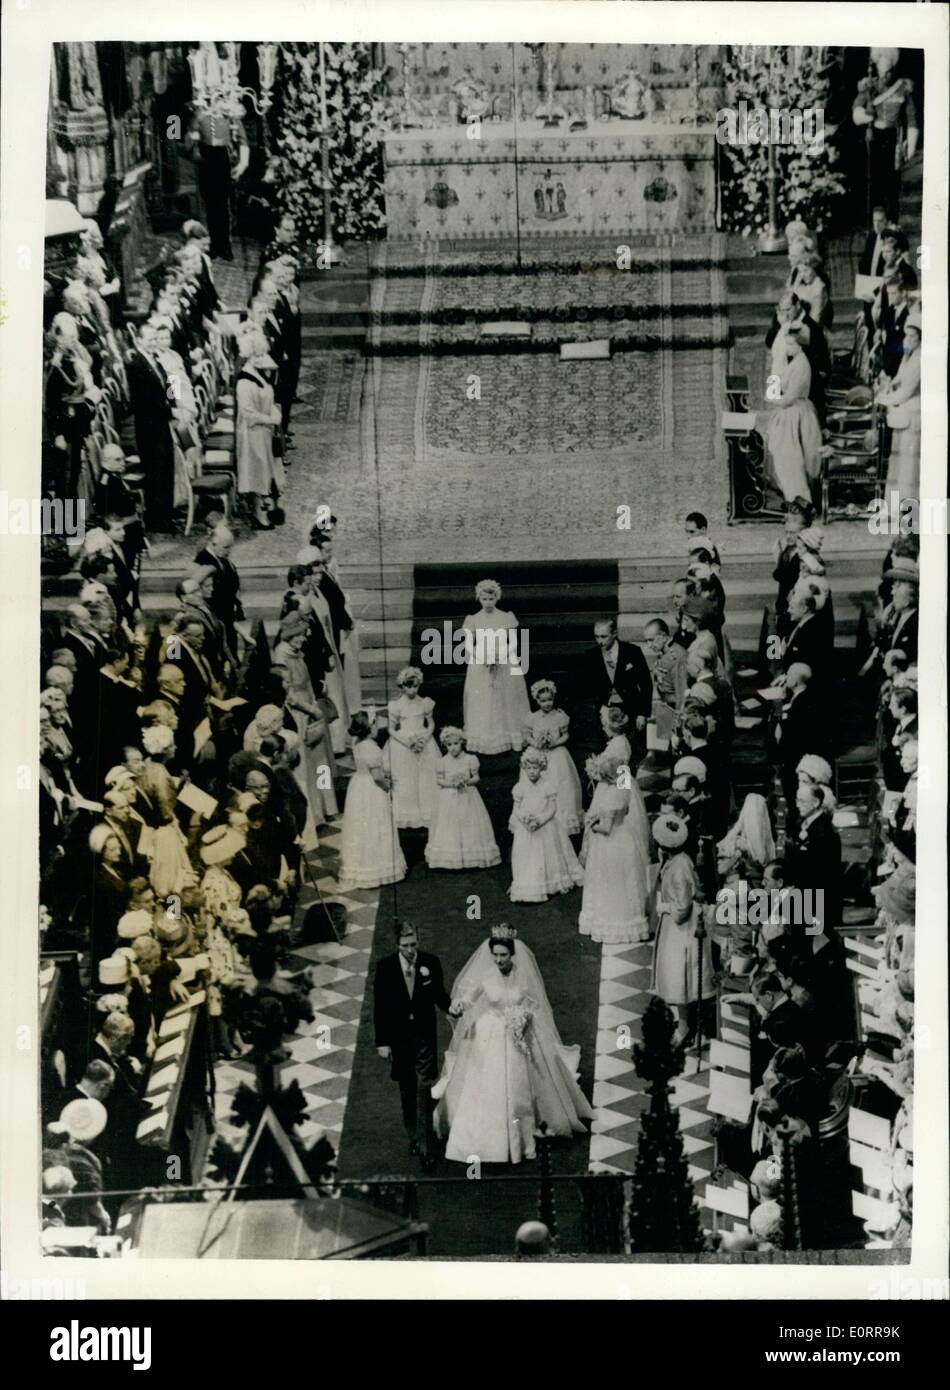 05 maggio 1960 - Il Royal Wedding mano nella mano camminano giù il corridoio. La foto mostra la principessa Margaret e suo marito Antony Armstrong Jones a piedi giù per la remate dopo il loro matrimonio oggi in Westminster Abbey. La loro giovane bridesmaids può essere visto in seguito. Foto Stock